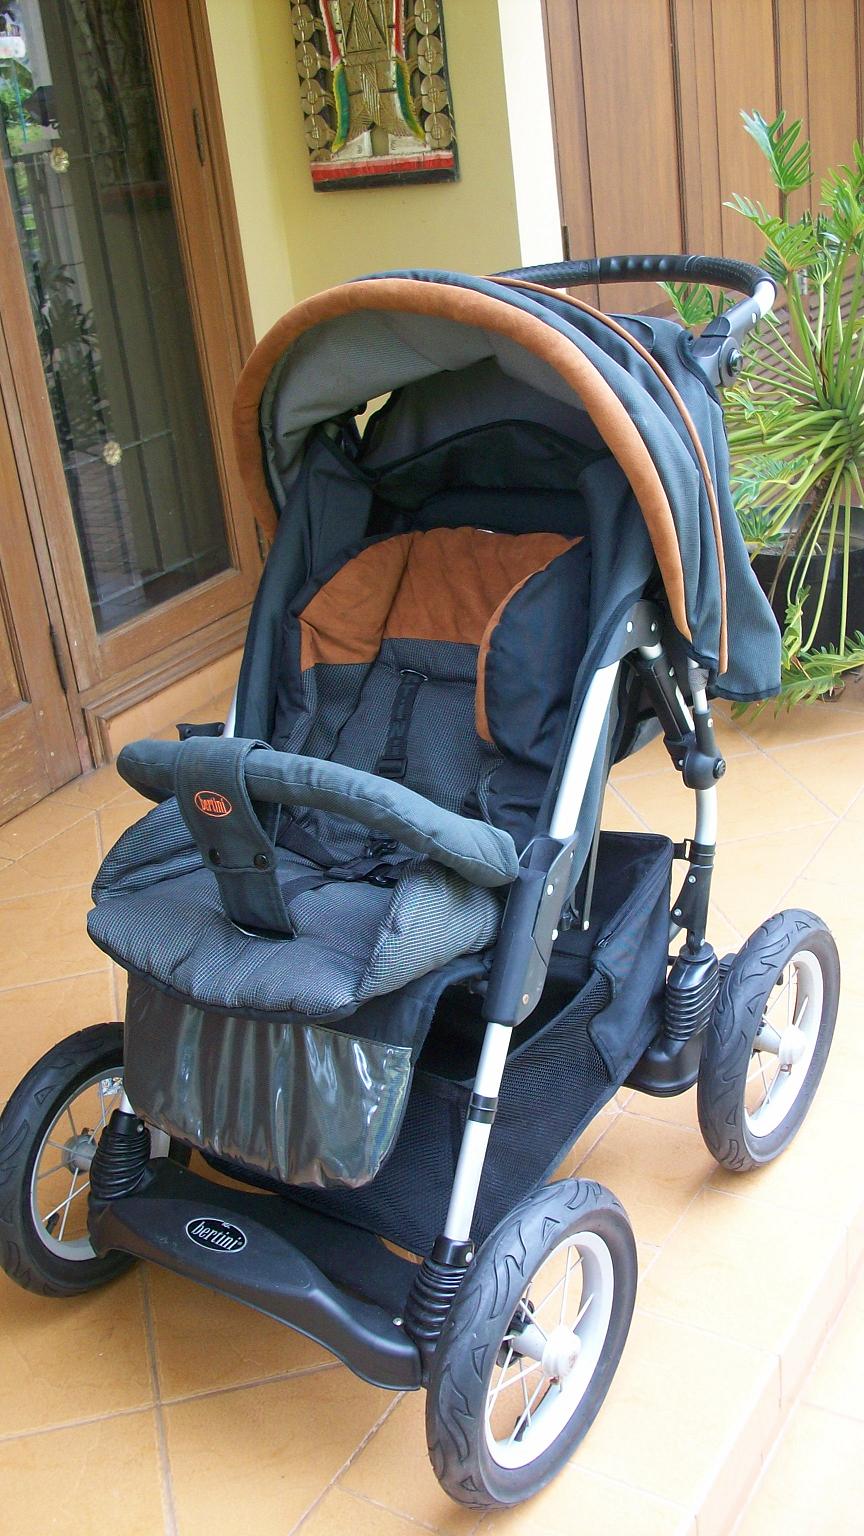 bertini shuttle stroller